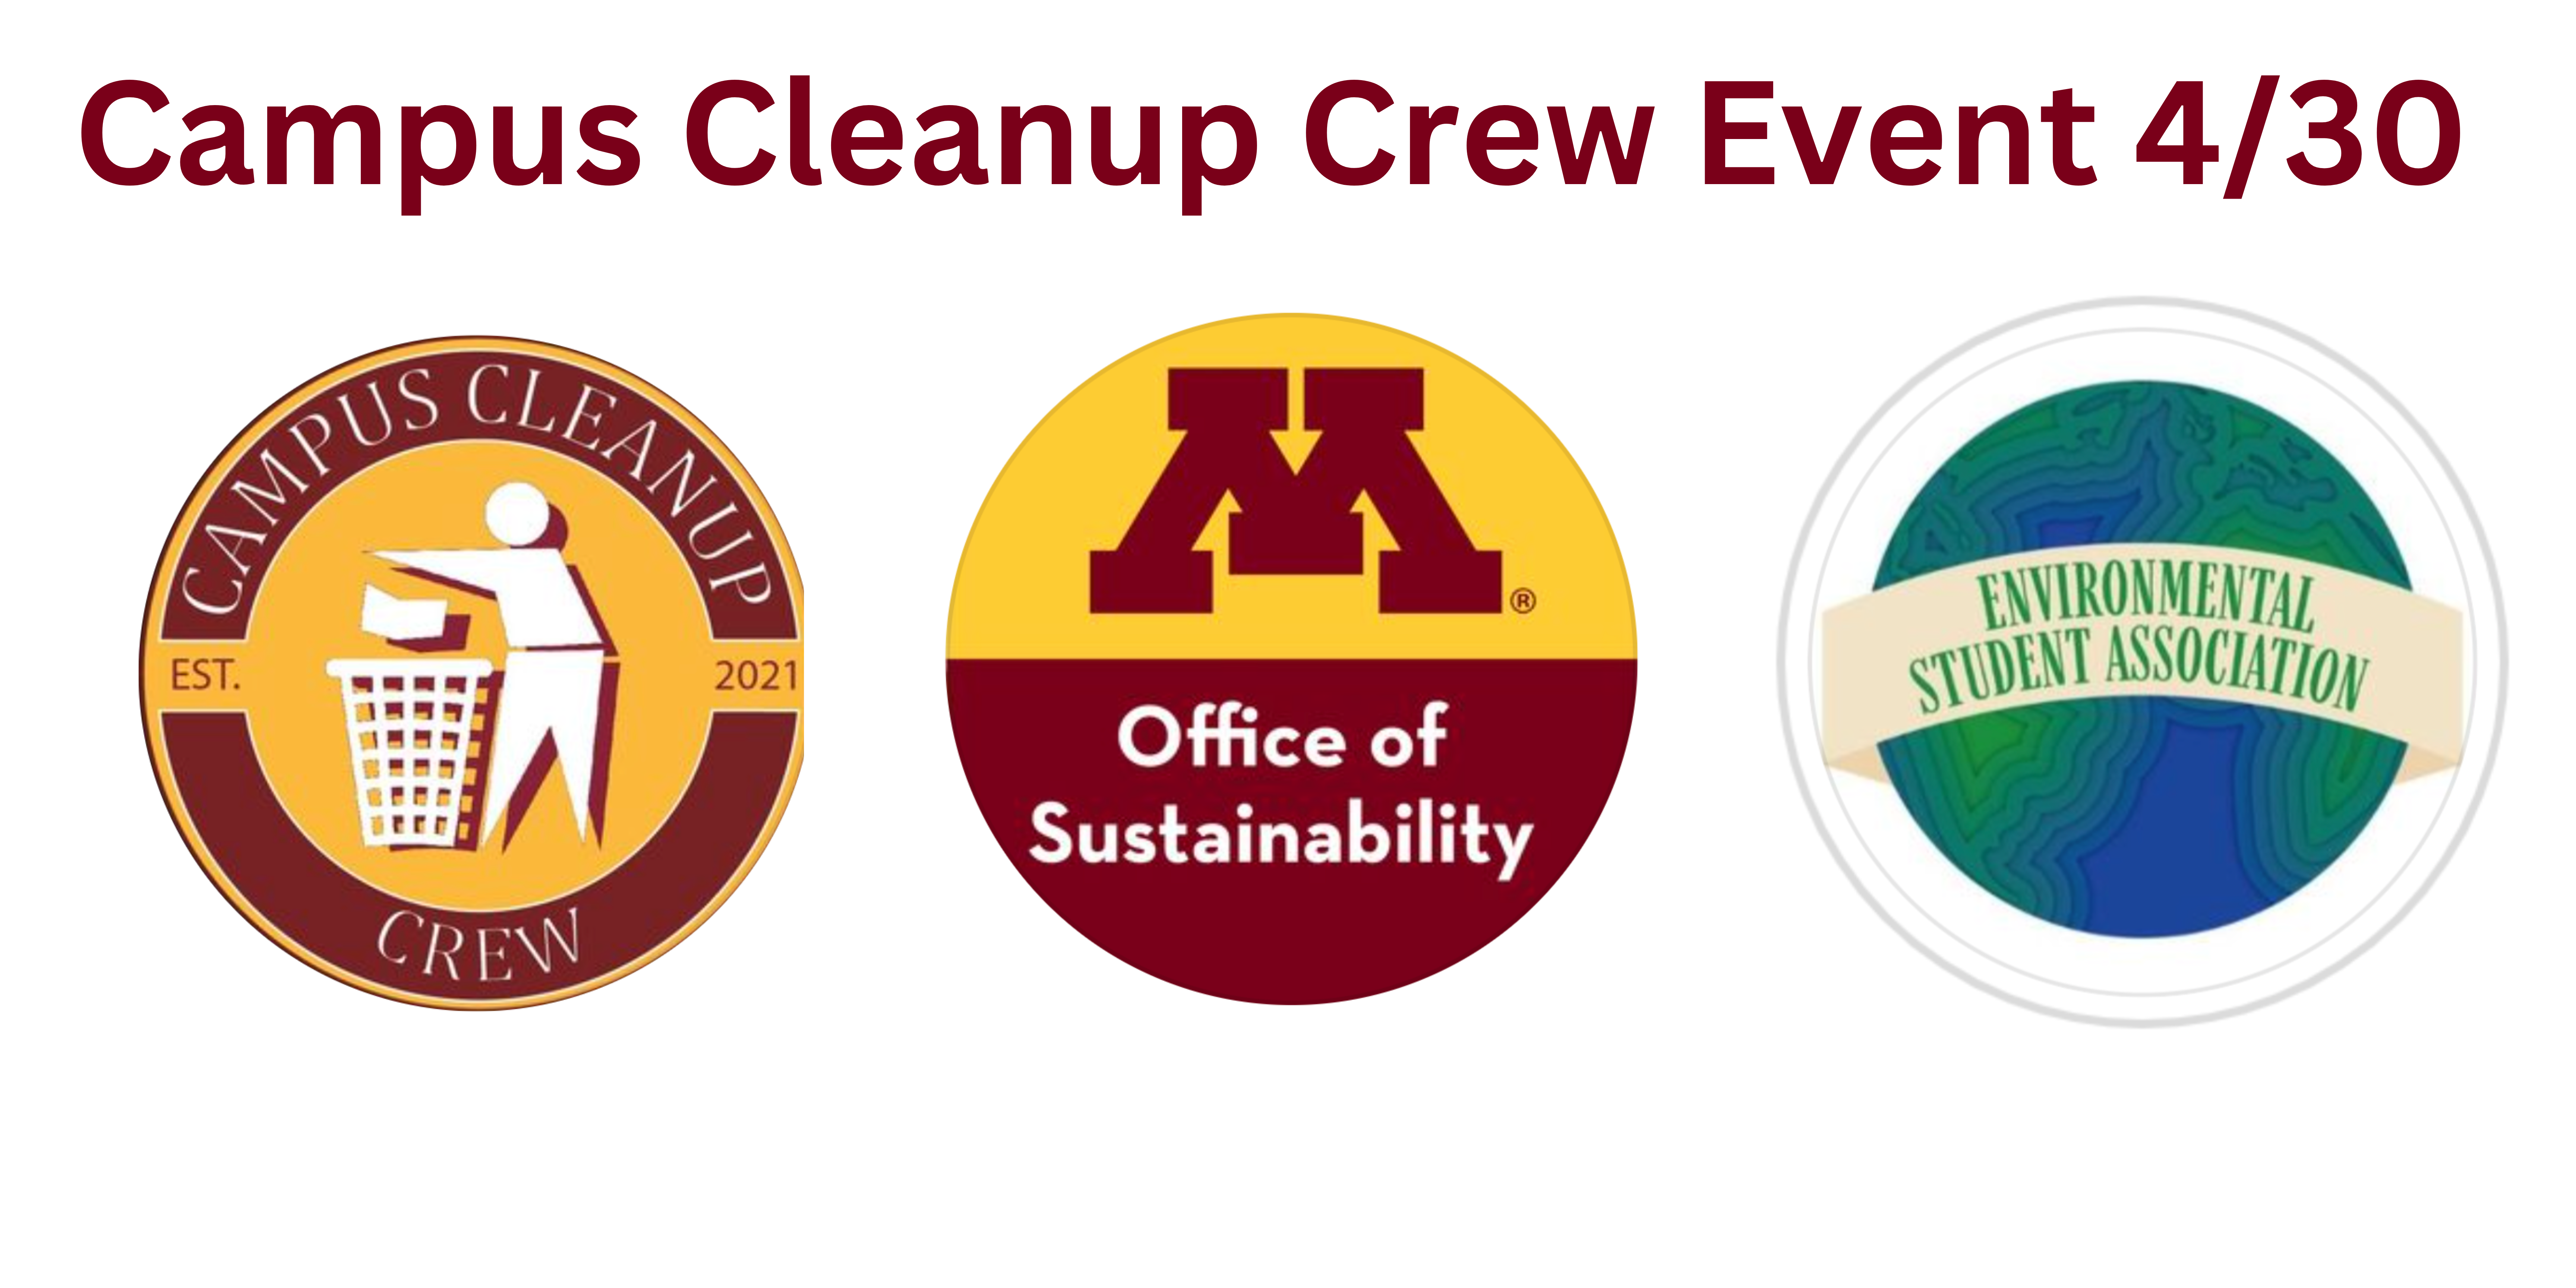 Campus Cleanup Crew event 4/30